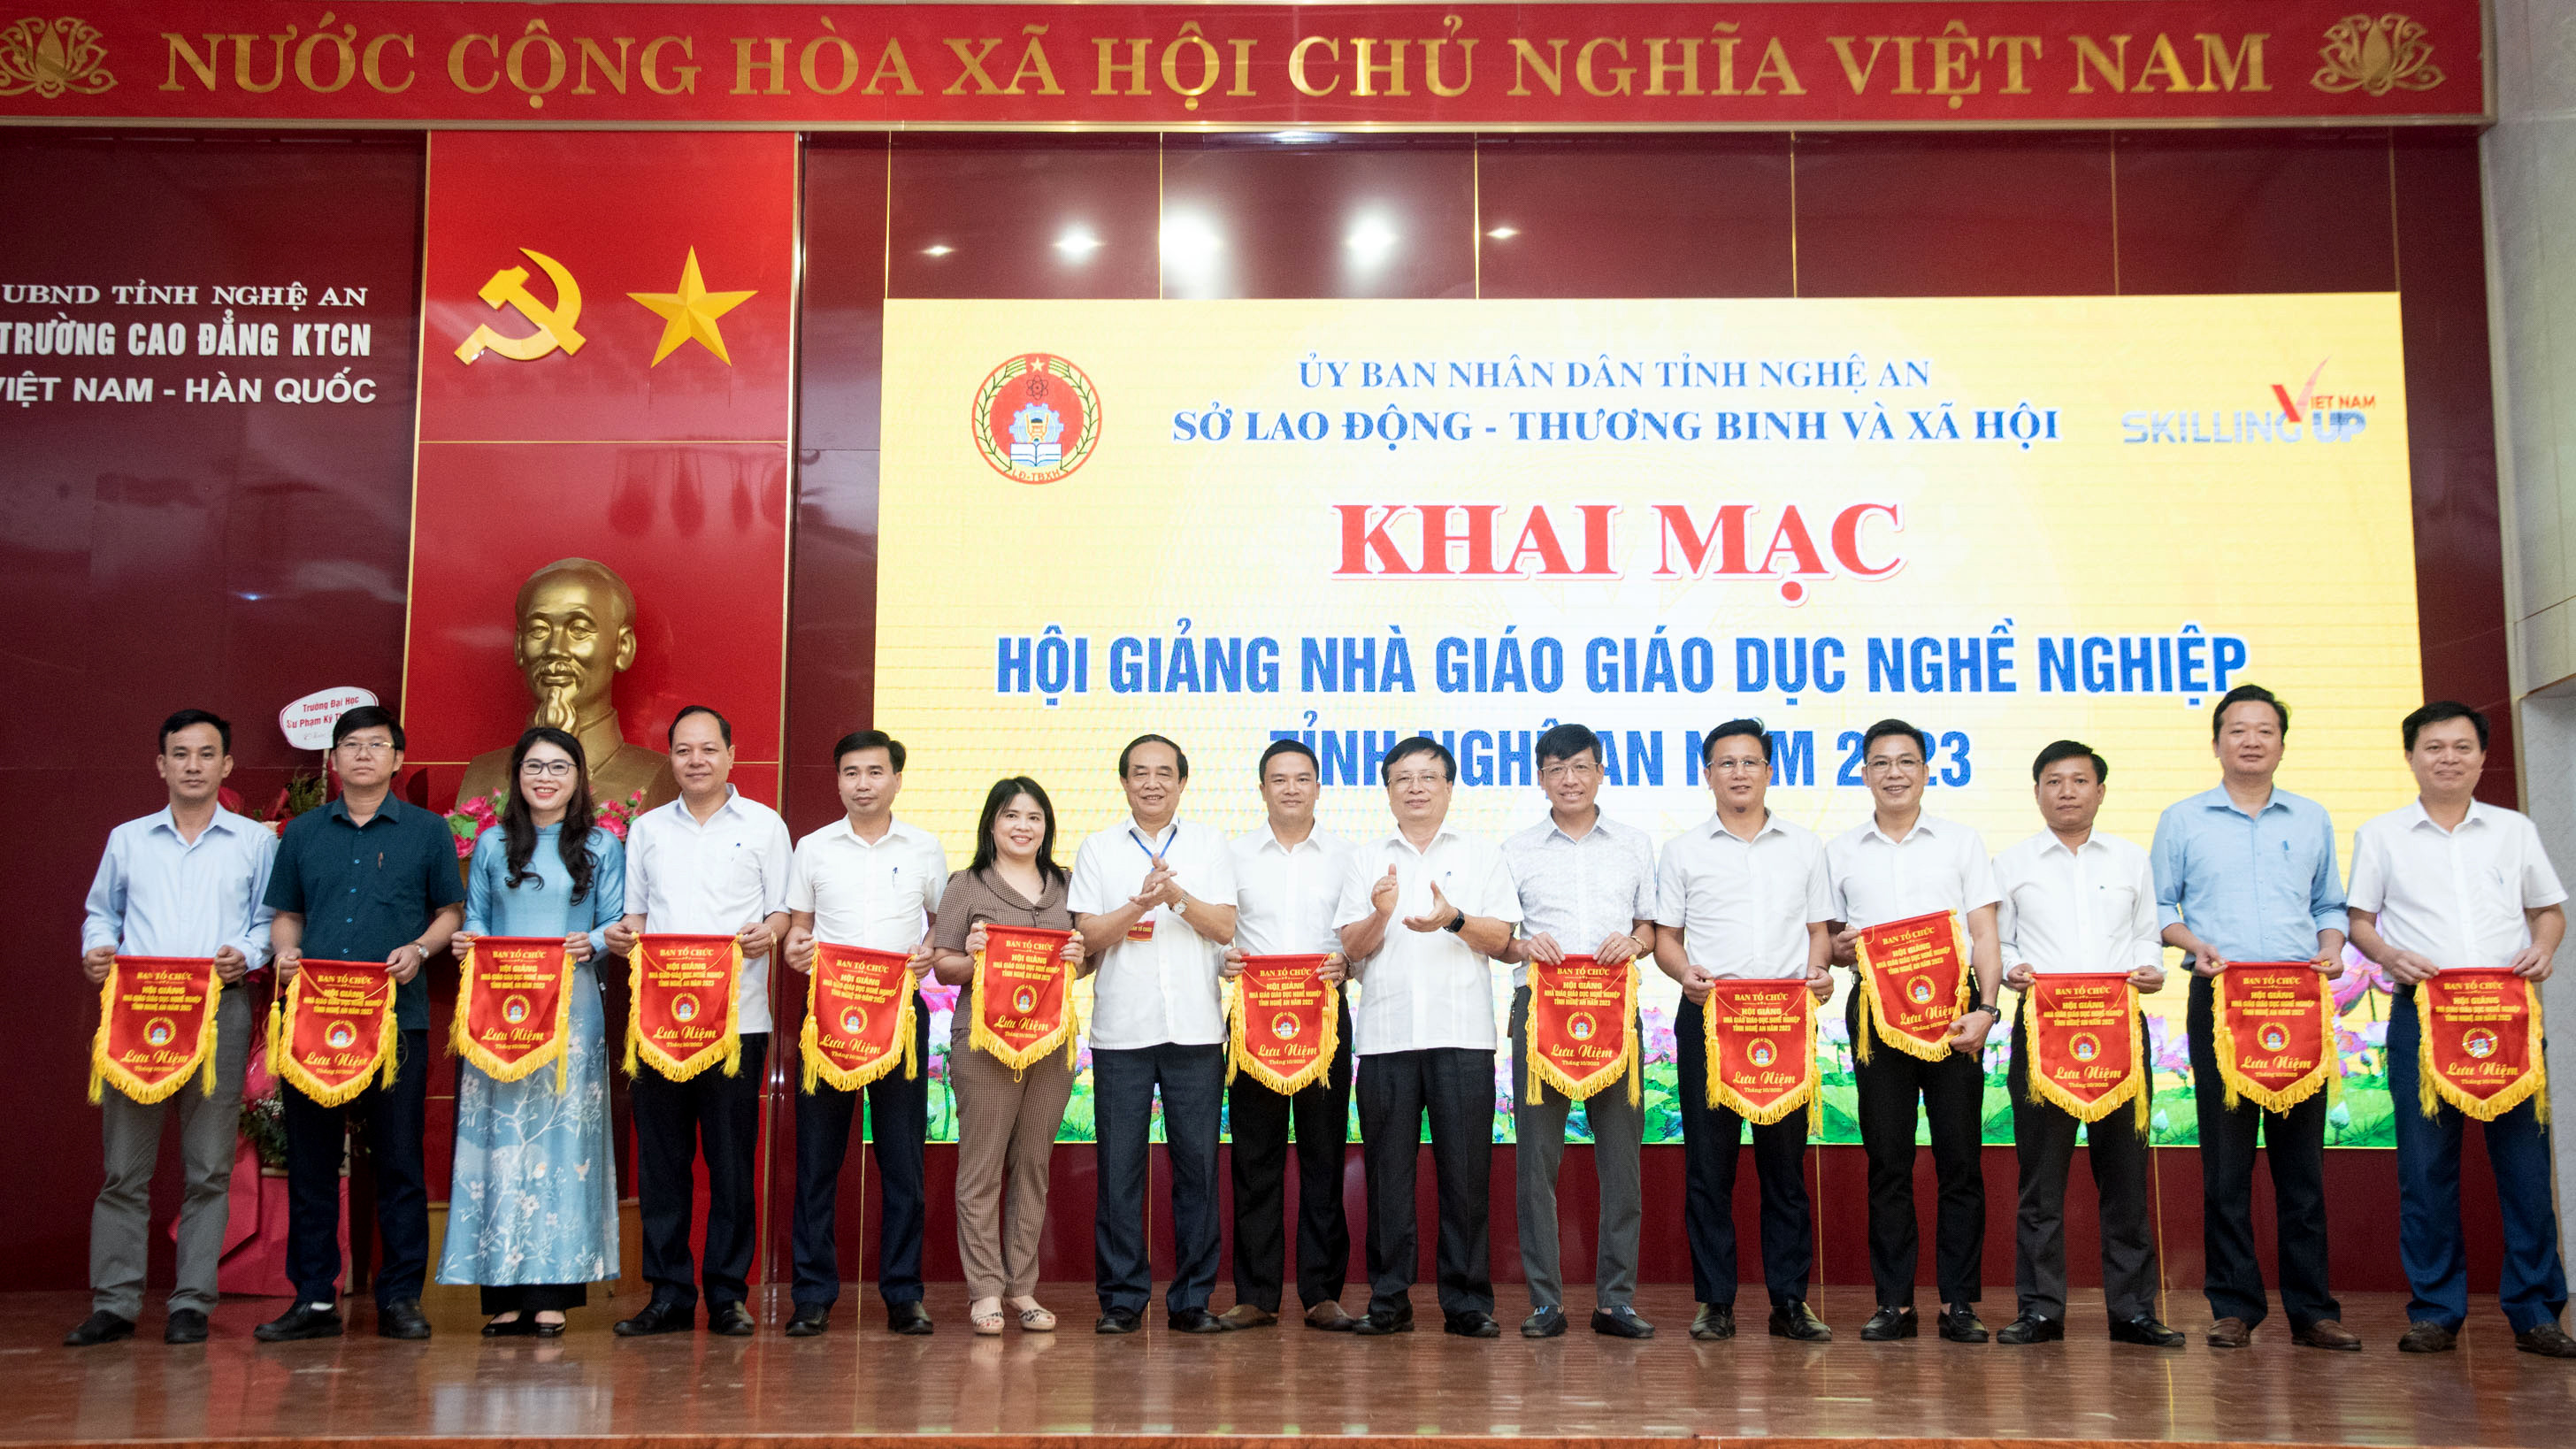 Lãnh đạo Ủy ban nhân dân tỉnh, Sở LĐTBXH tặng cờ lưu niệm cho các đơn vị giáo dục nghề nghiệp.jpg